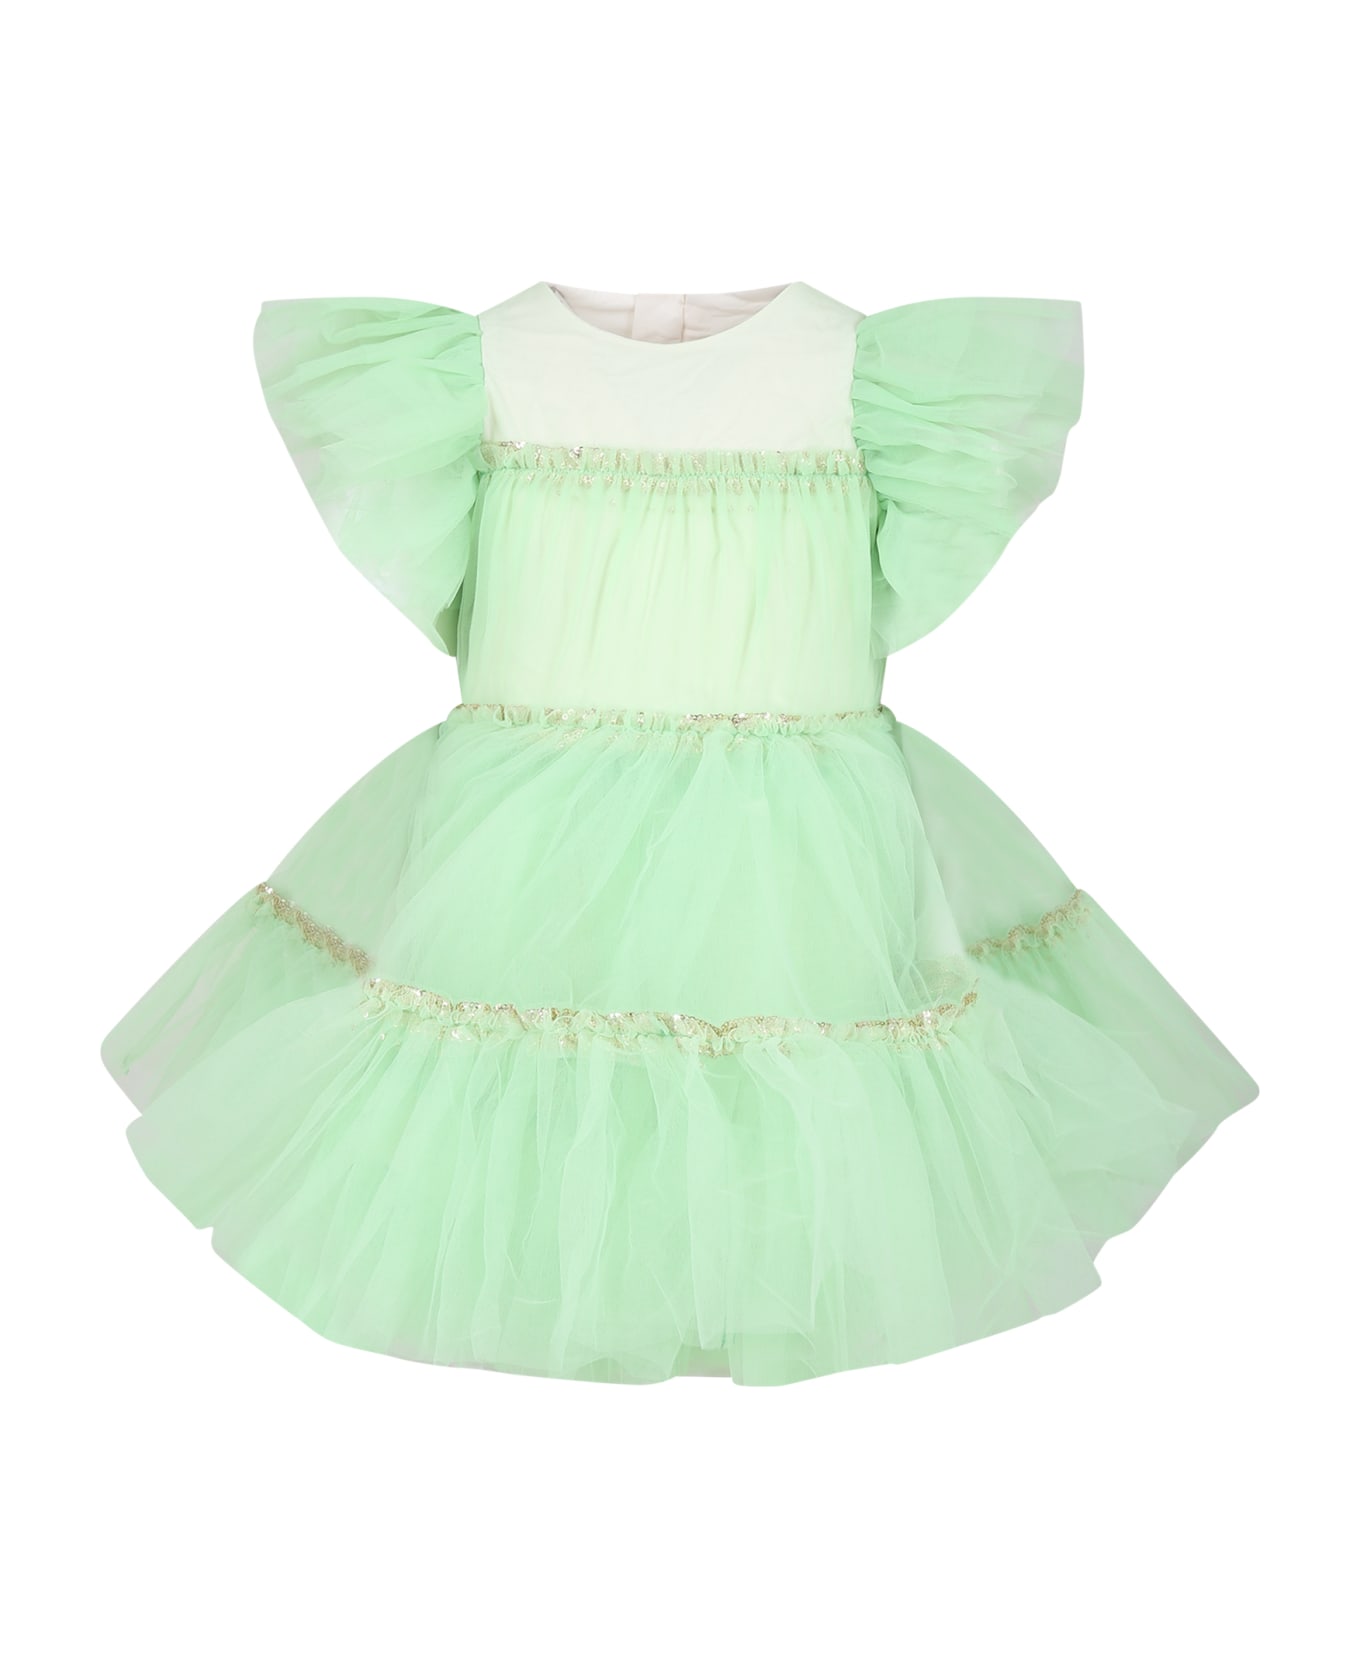 Billieblush Green Tulle Dress For Girl - Green